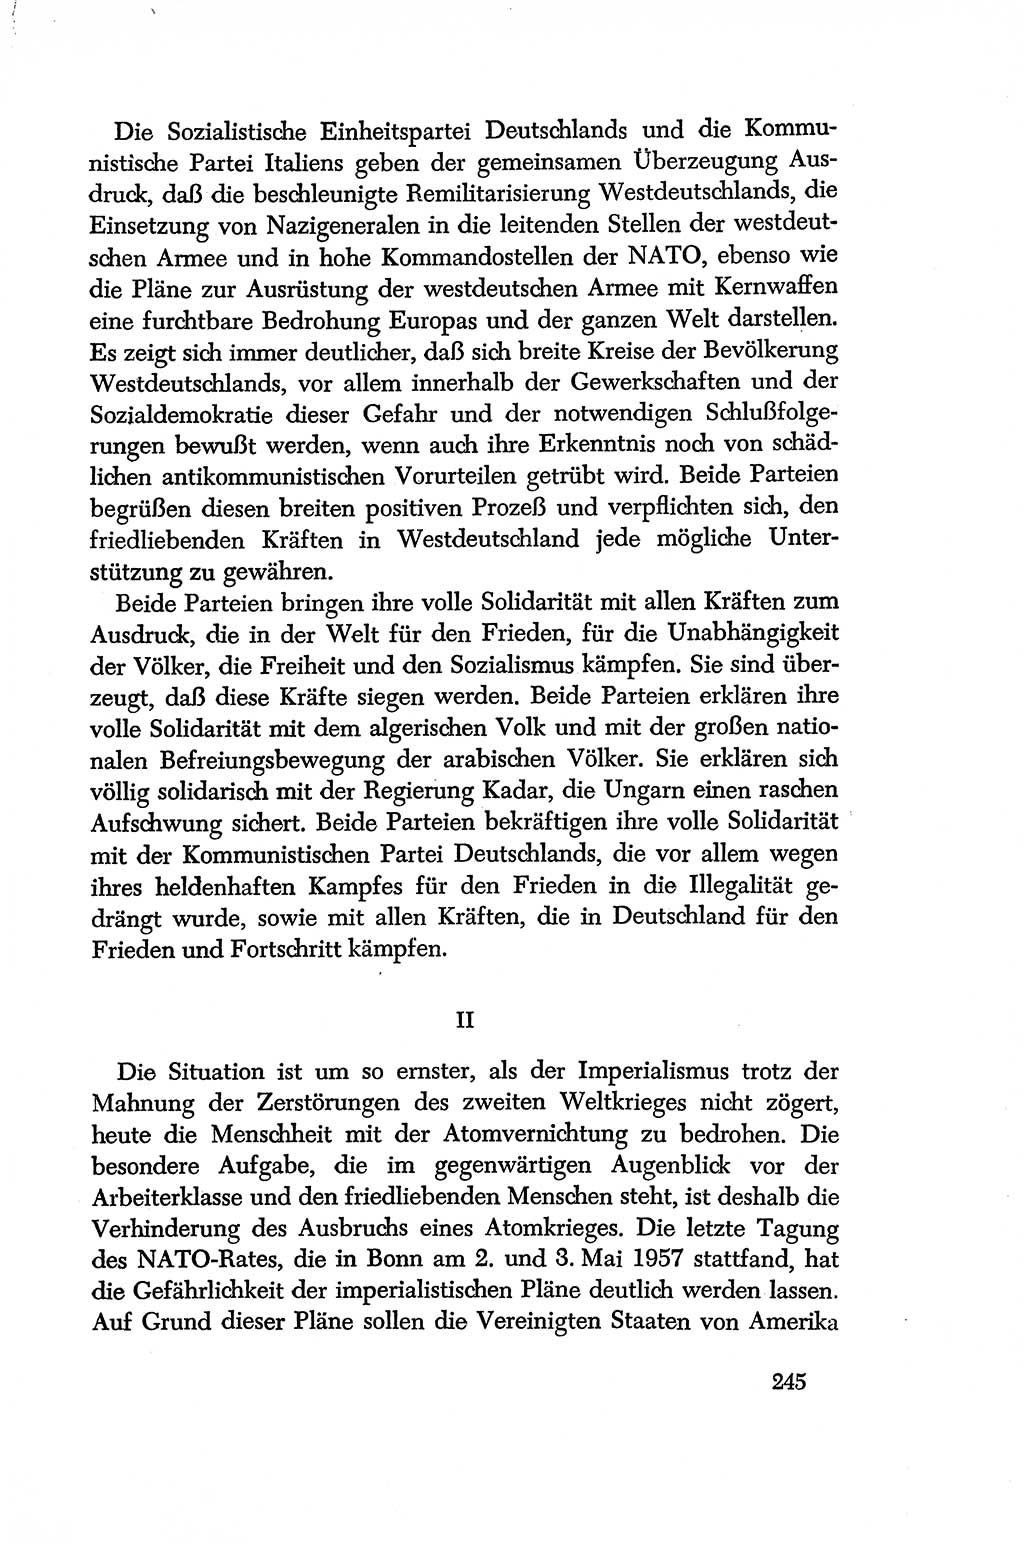 Dokumente der Sozialistischen Einheitspartei Deutschlands (SED) [Deutsche Demokratische Republik (DDR)] 1956-1957, Seite 245 (Dok. SED DDR 1956-1957, S. 245)